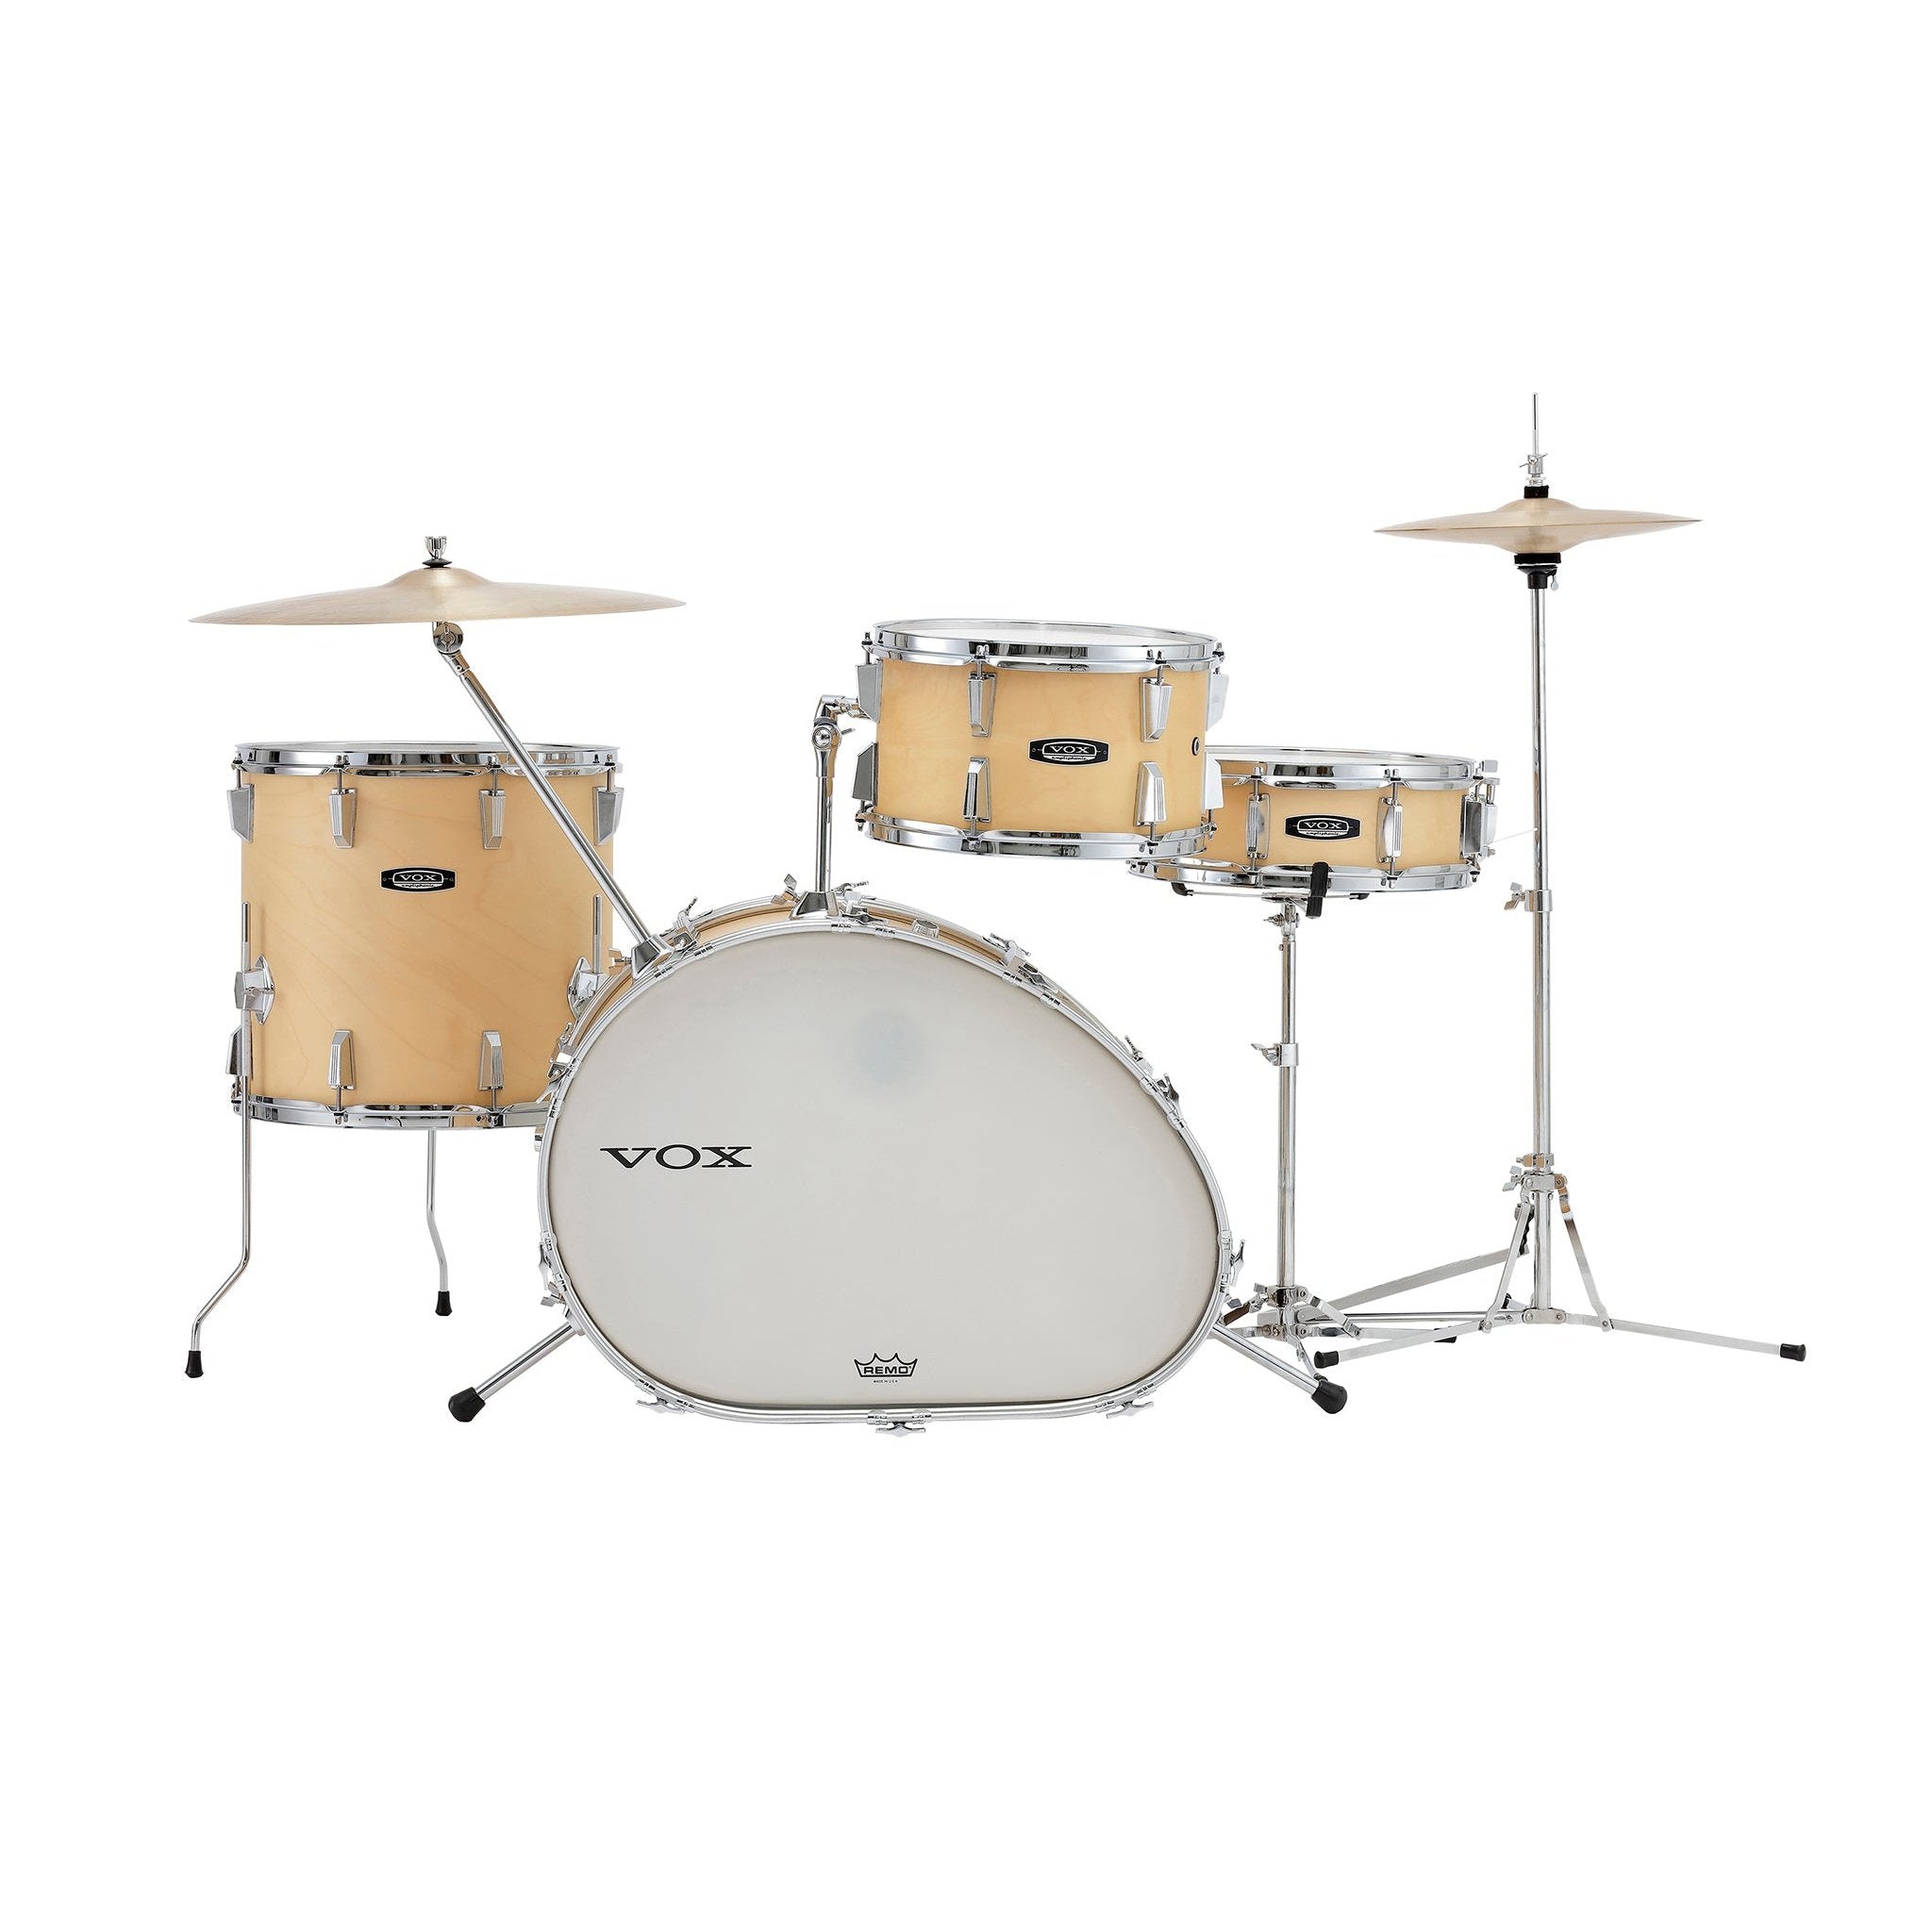 Vox Telstar Maple Drum Kit 1